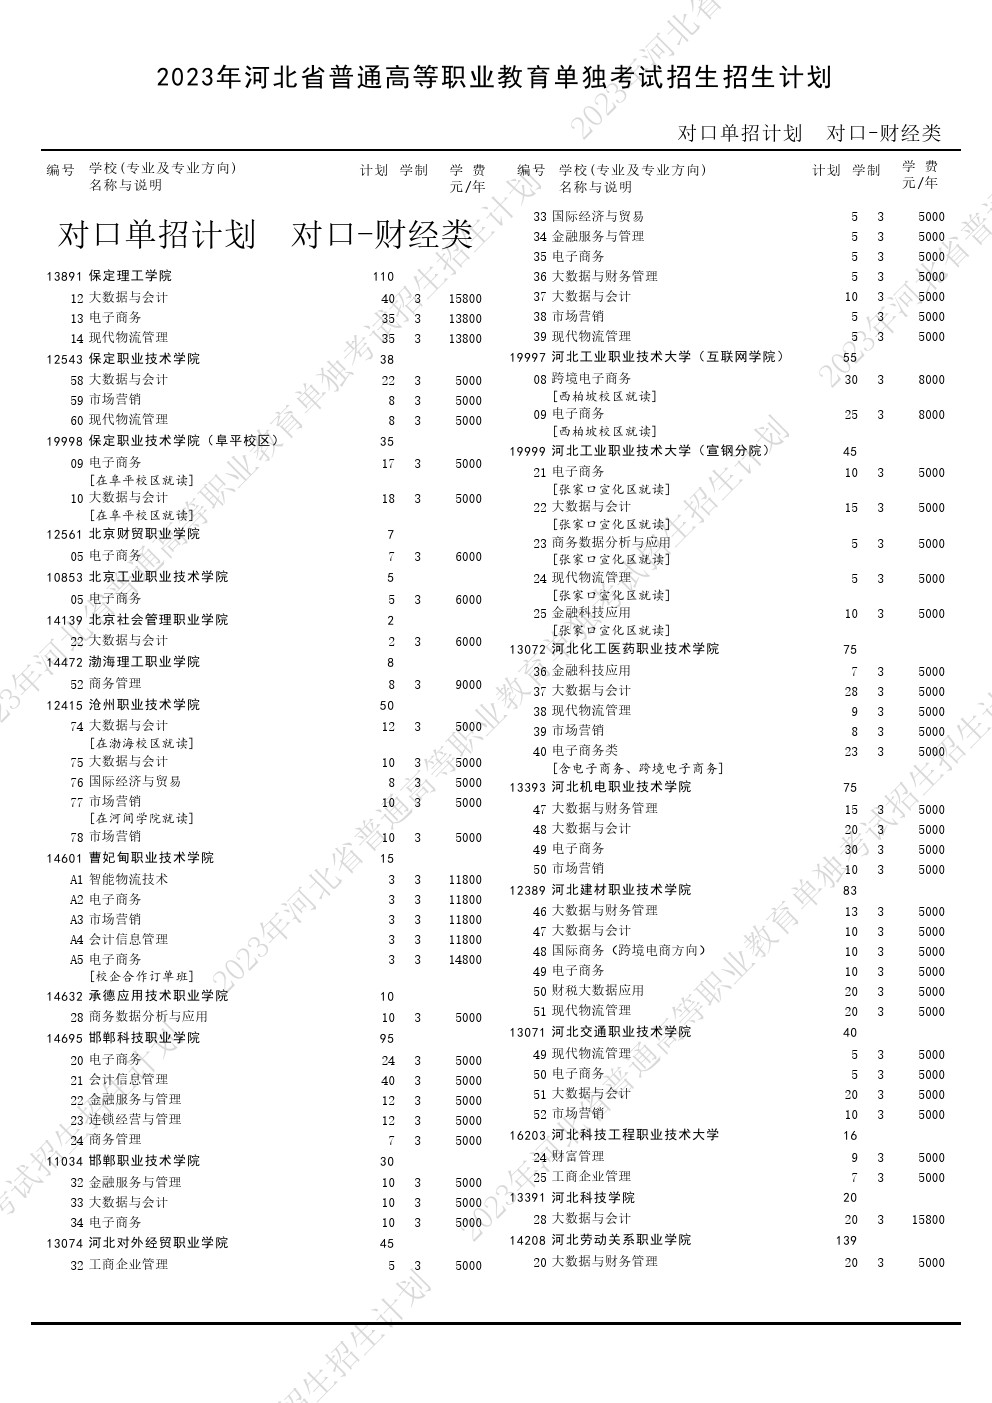 2023年河北省高职单招考试对口财经类招生计划